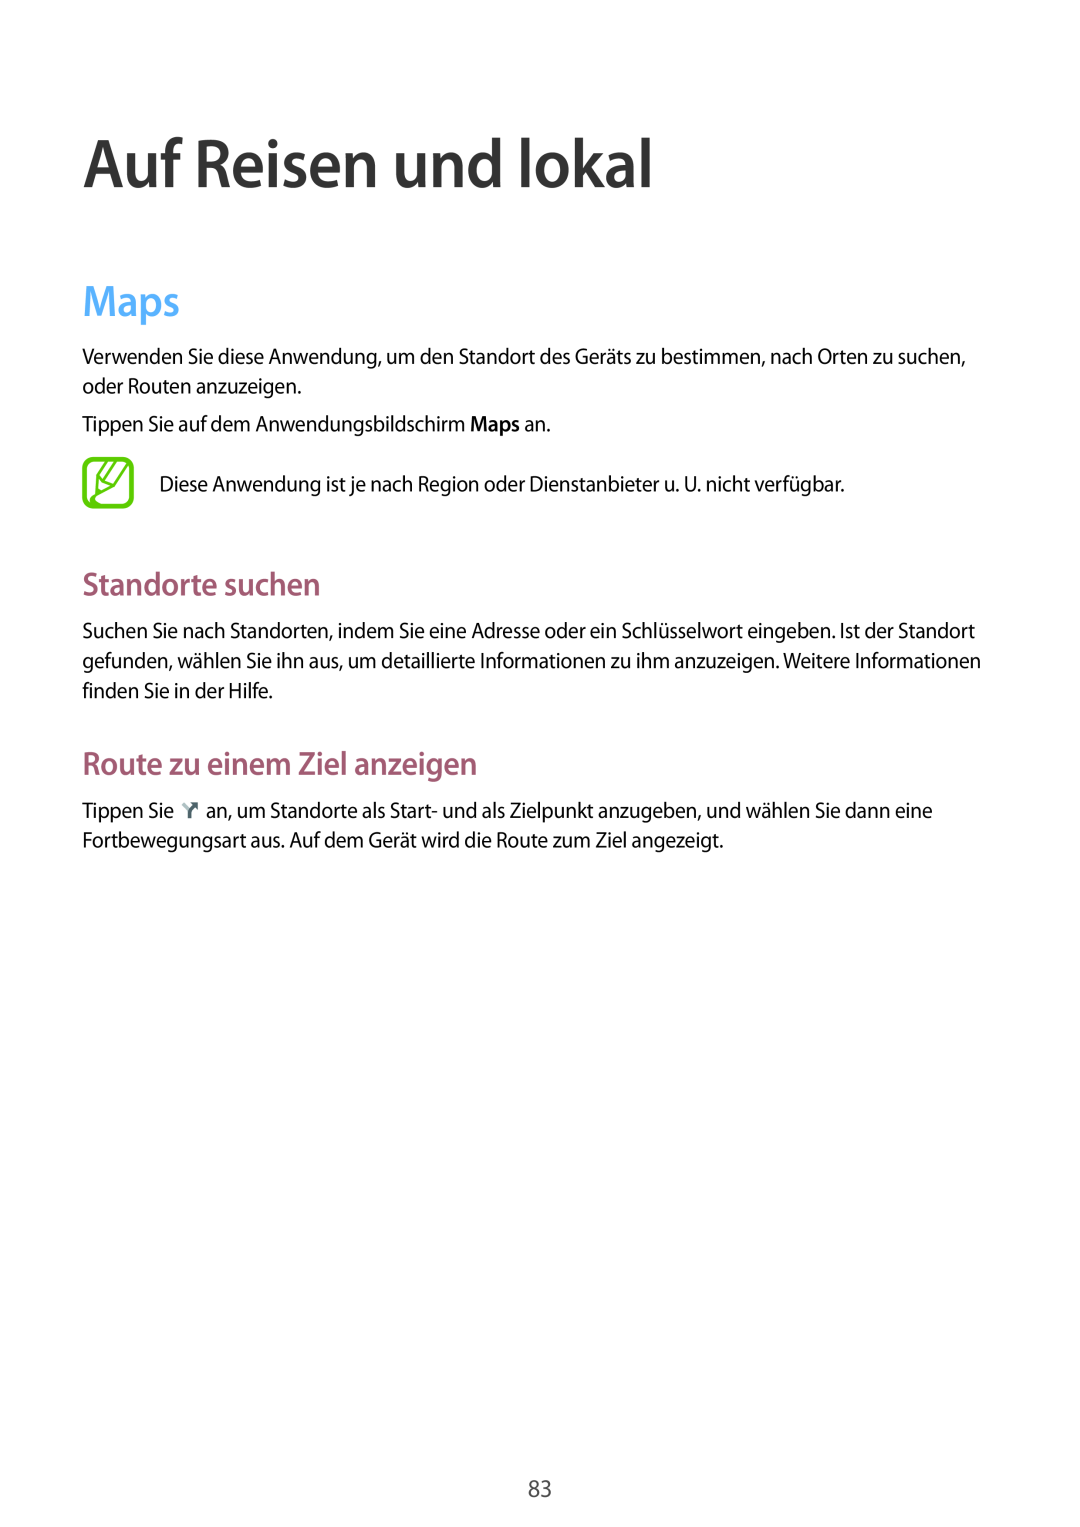 Samsung SM-T2100GNATUR, SM-T2100ZWAATO manual Auf Reisen und lokal, Maps, Standorte suchen, Route zu einem Ziel anzeigen 